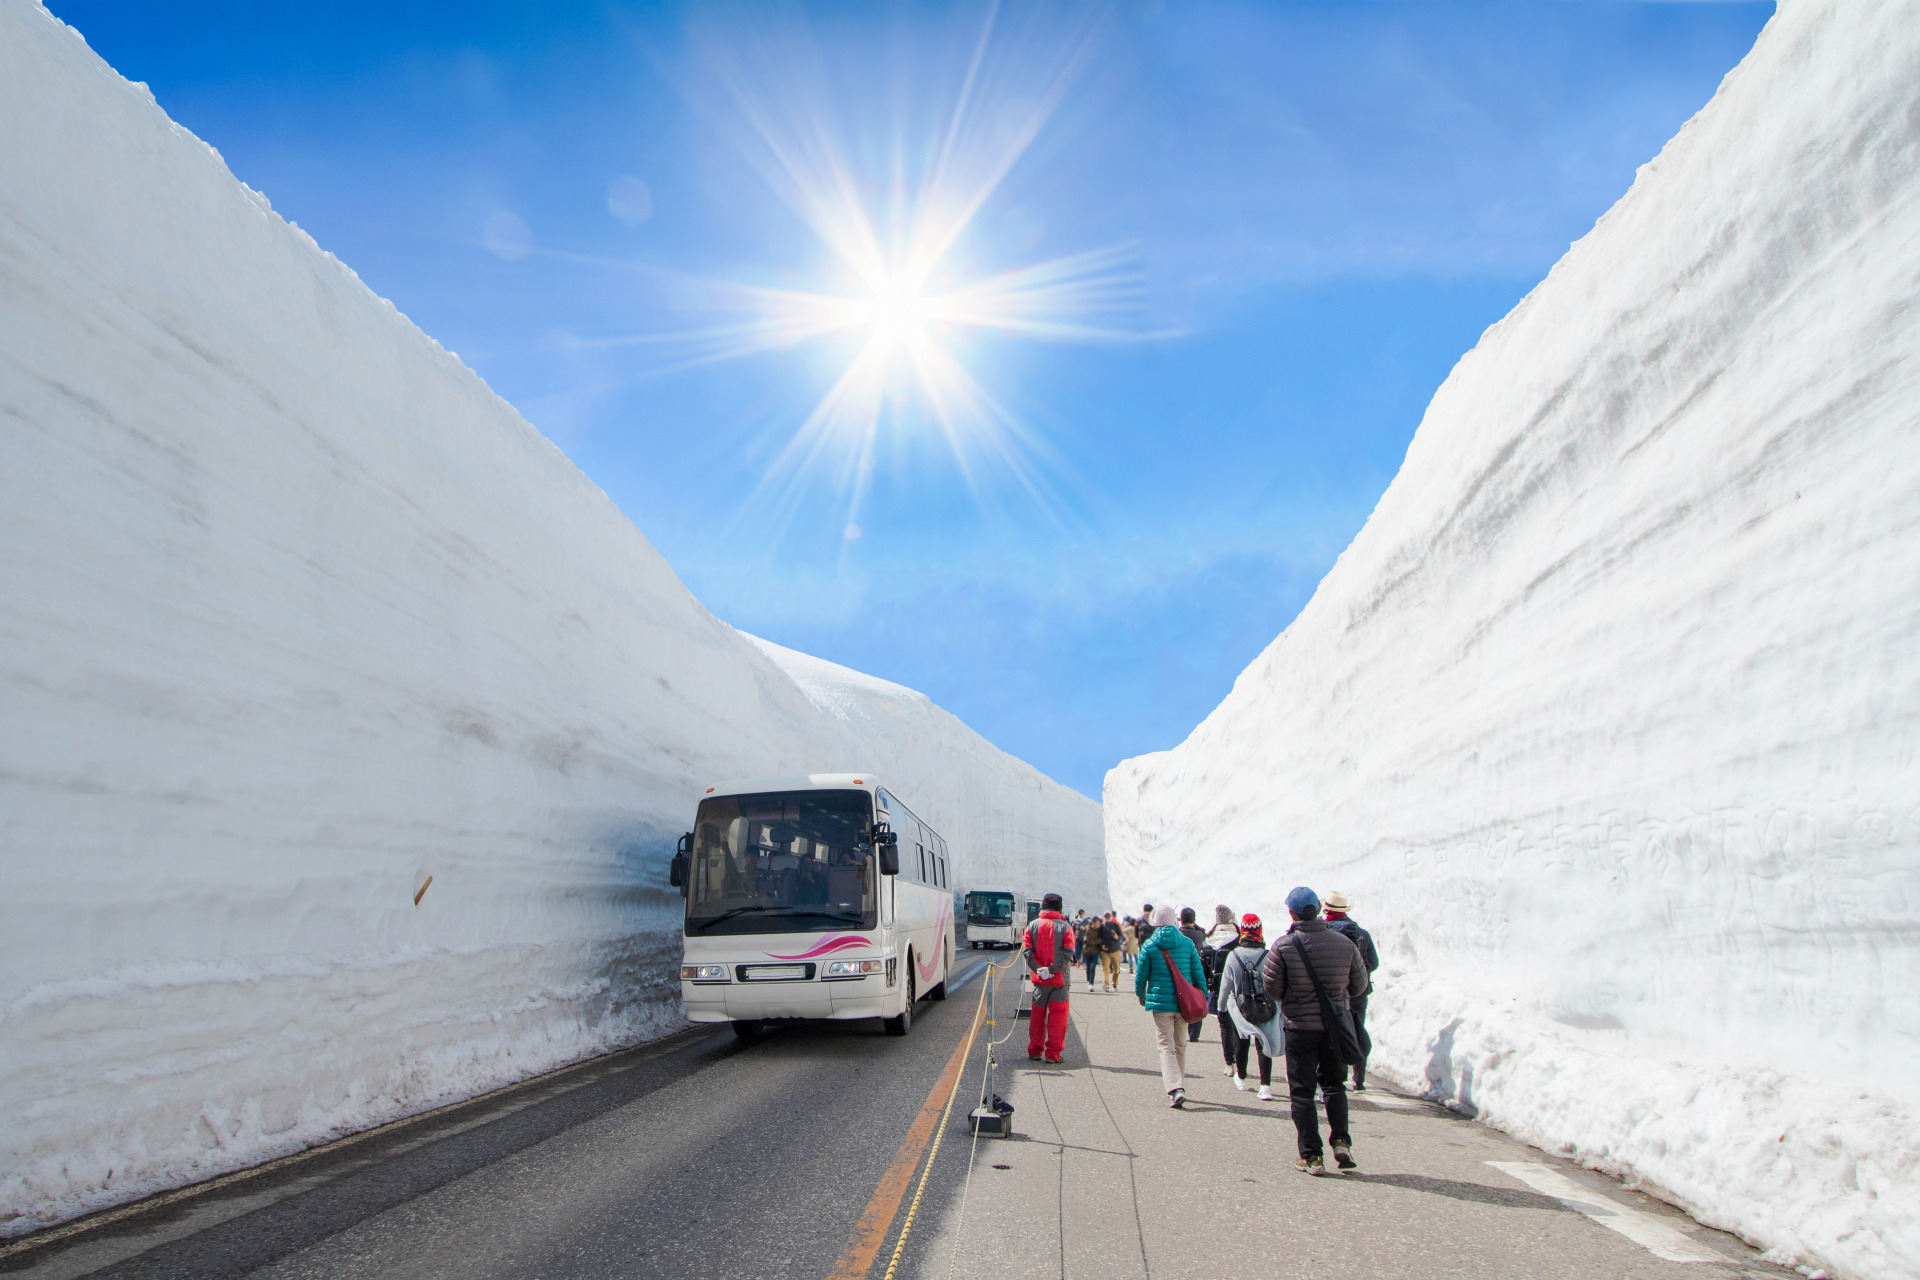 ■春天到来, 立山黑部阿尔卑斯山脉路线重开，让我们可以见证雄伟的20米高雪壁和发掘大自然的宝库！